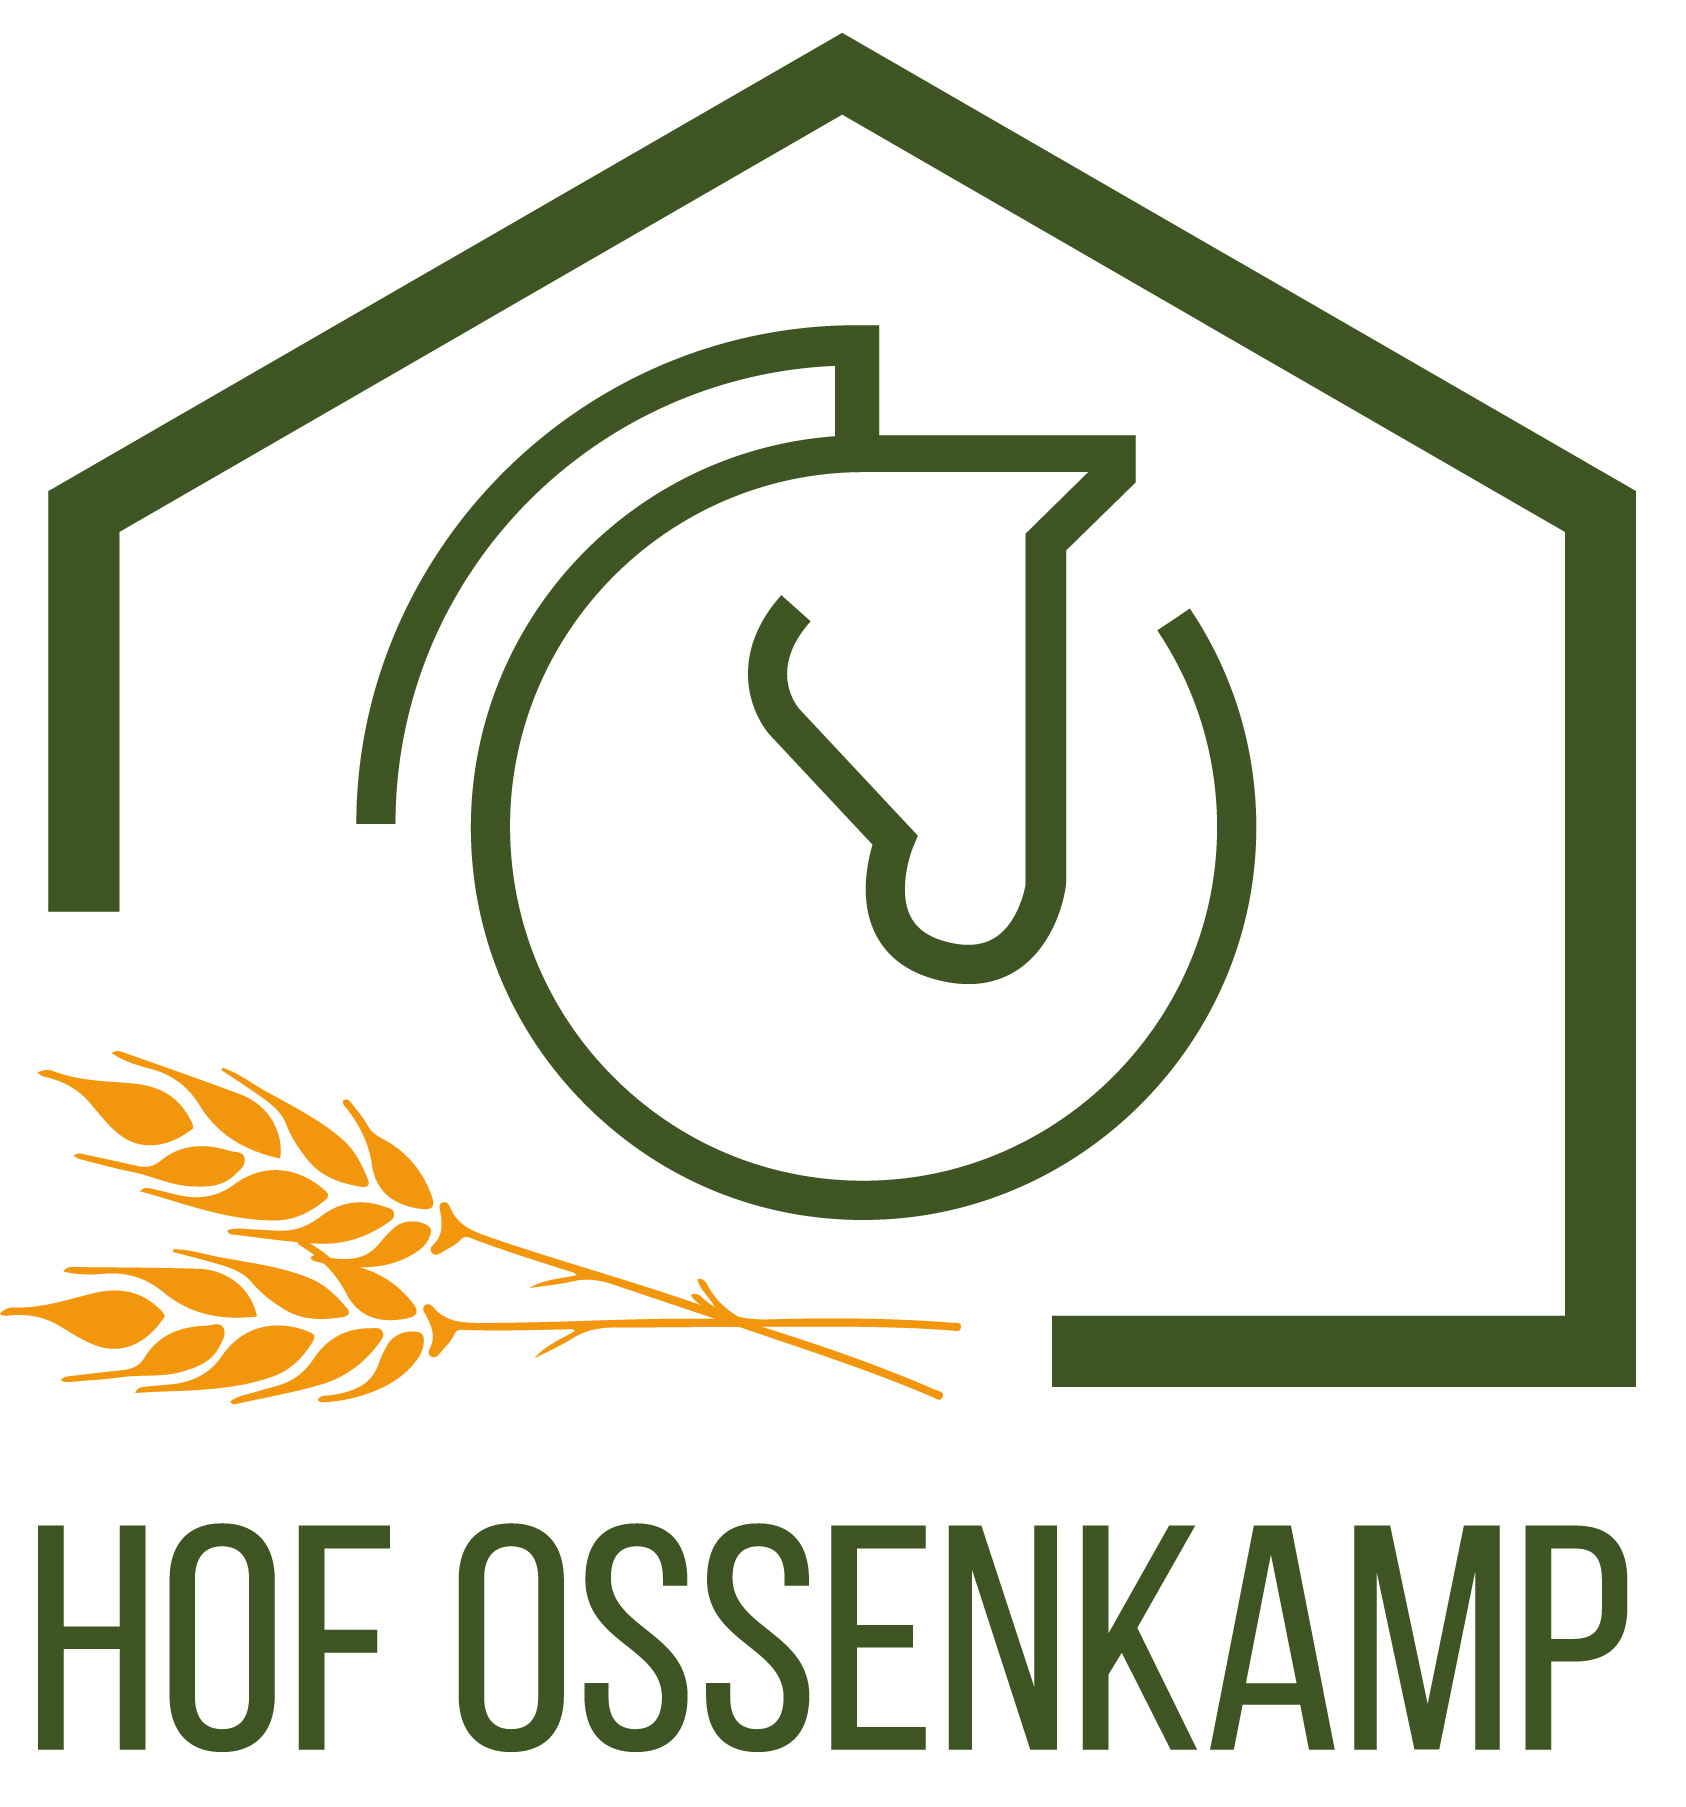 Hof Ossenkamp